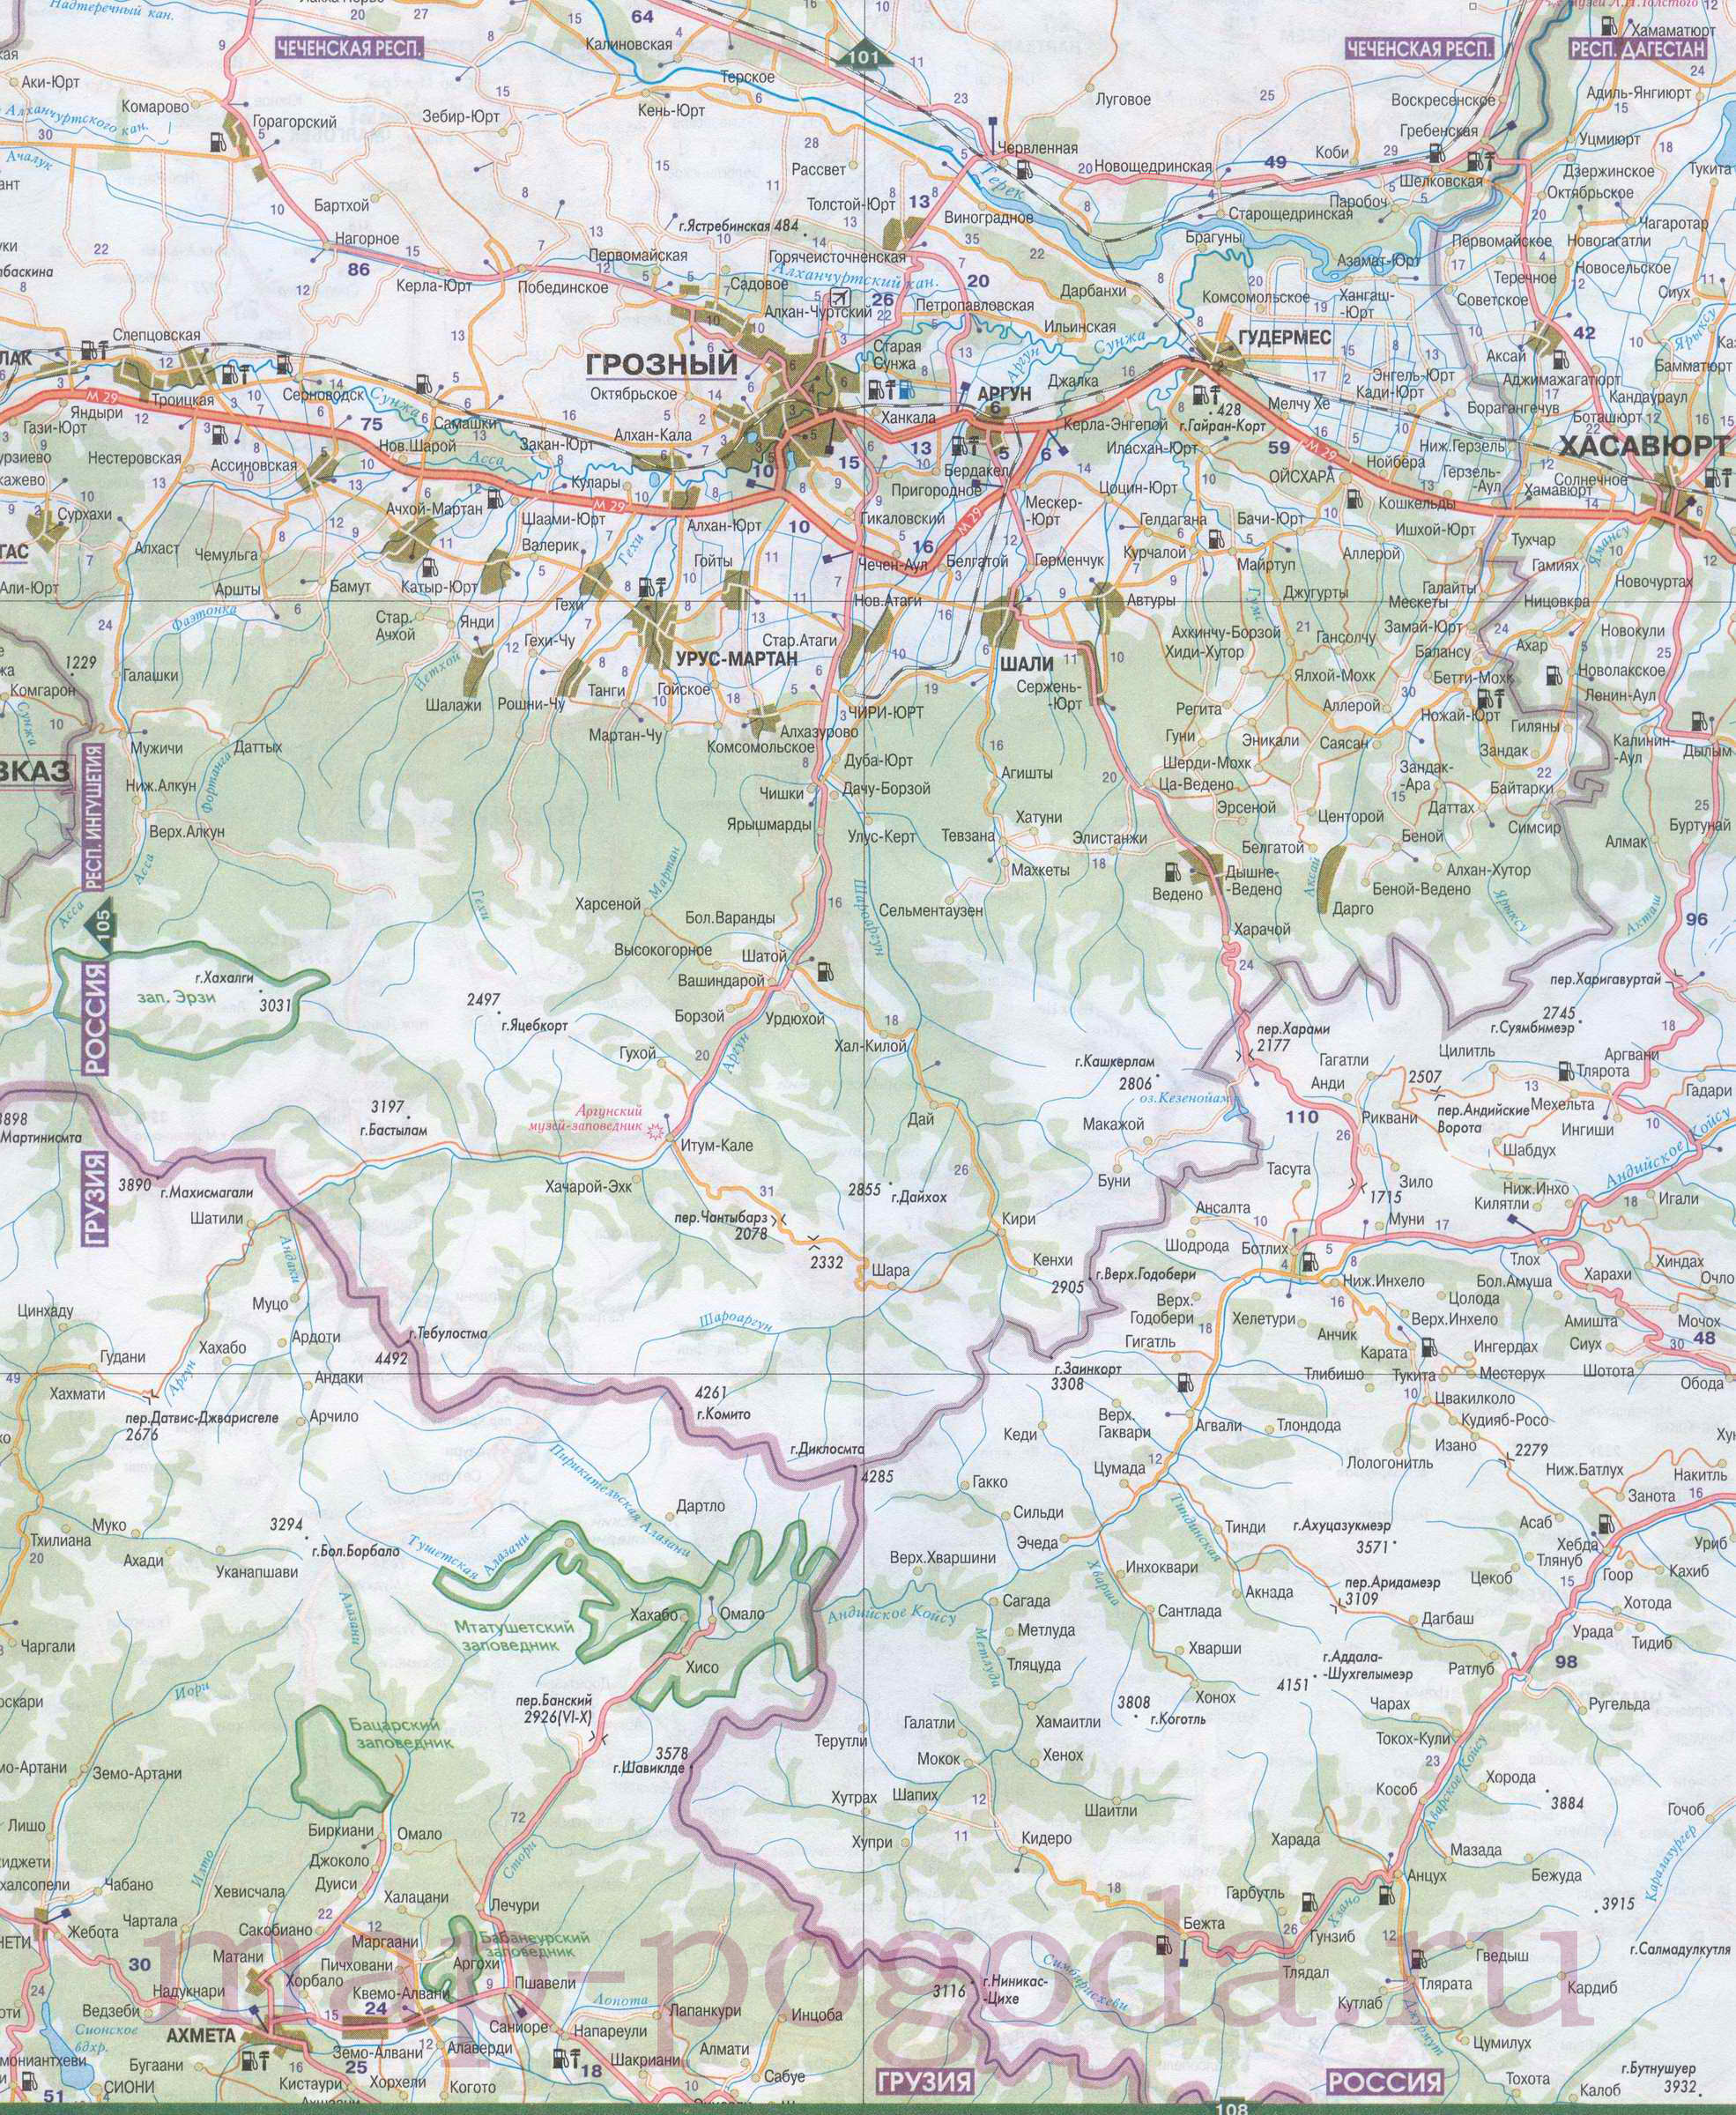 Автомобильная карта Дагестана. Подробная карта дагестана масштаба 1см:7км с городами и дорогами, A1 - 